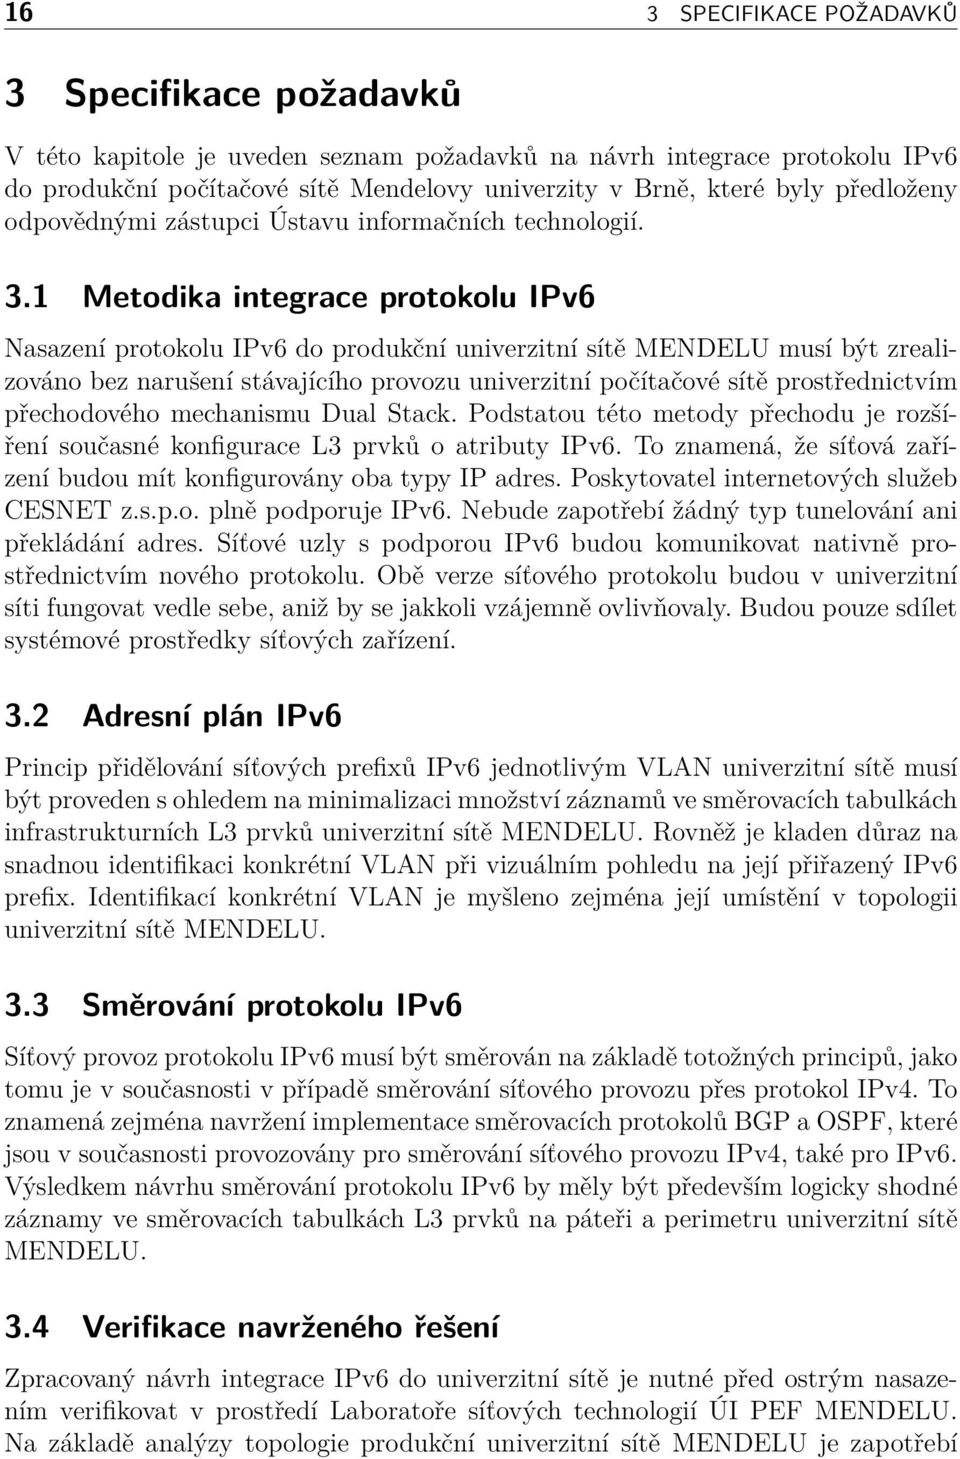 1 Metodika integrace protokolu IPv6 Nasazení protokolu IPv6 do produkční univerzitní sítě MENDELU musí být zrealizováno bez narušení stávajícího provozu univerzitní počítačové sítě prostřednictvím